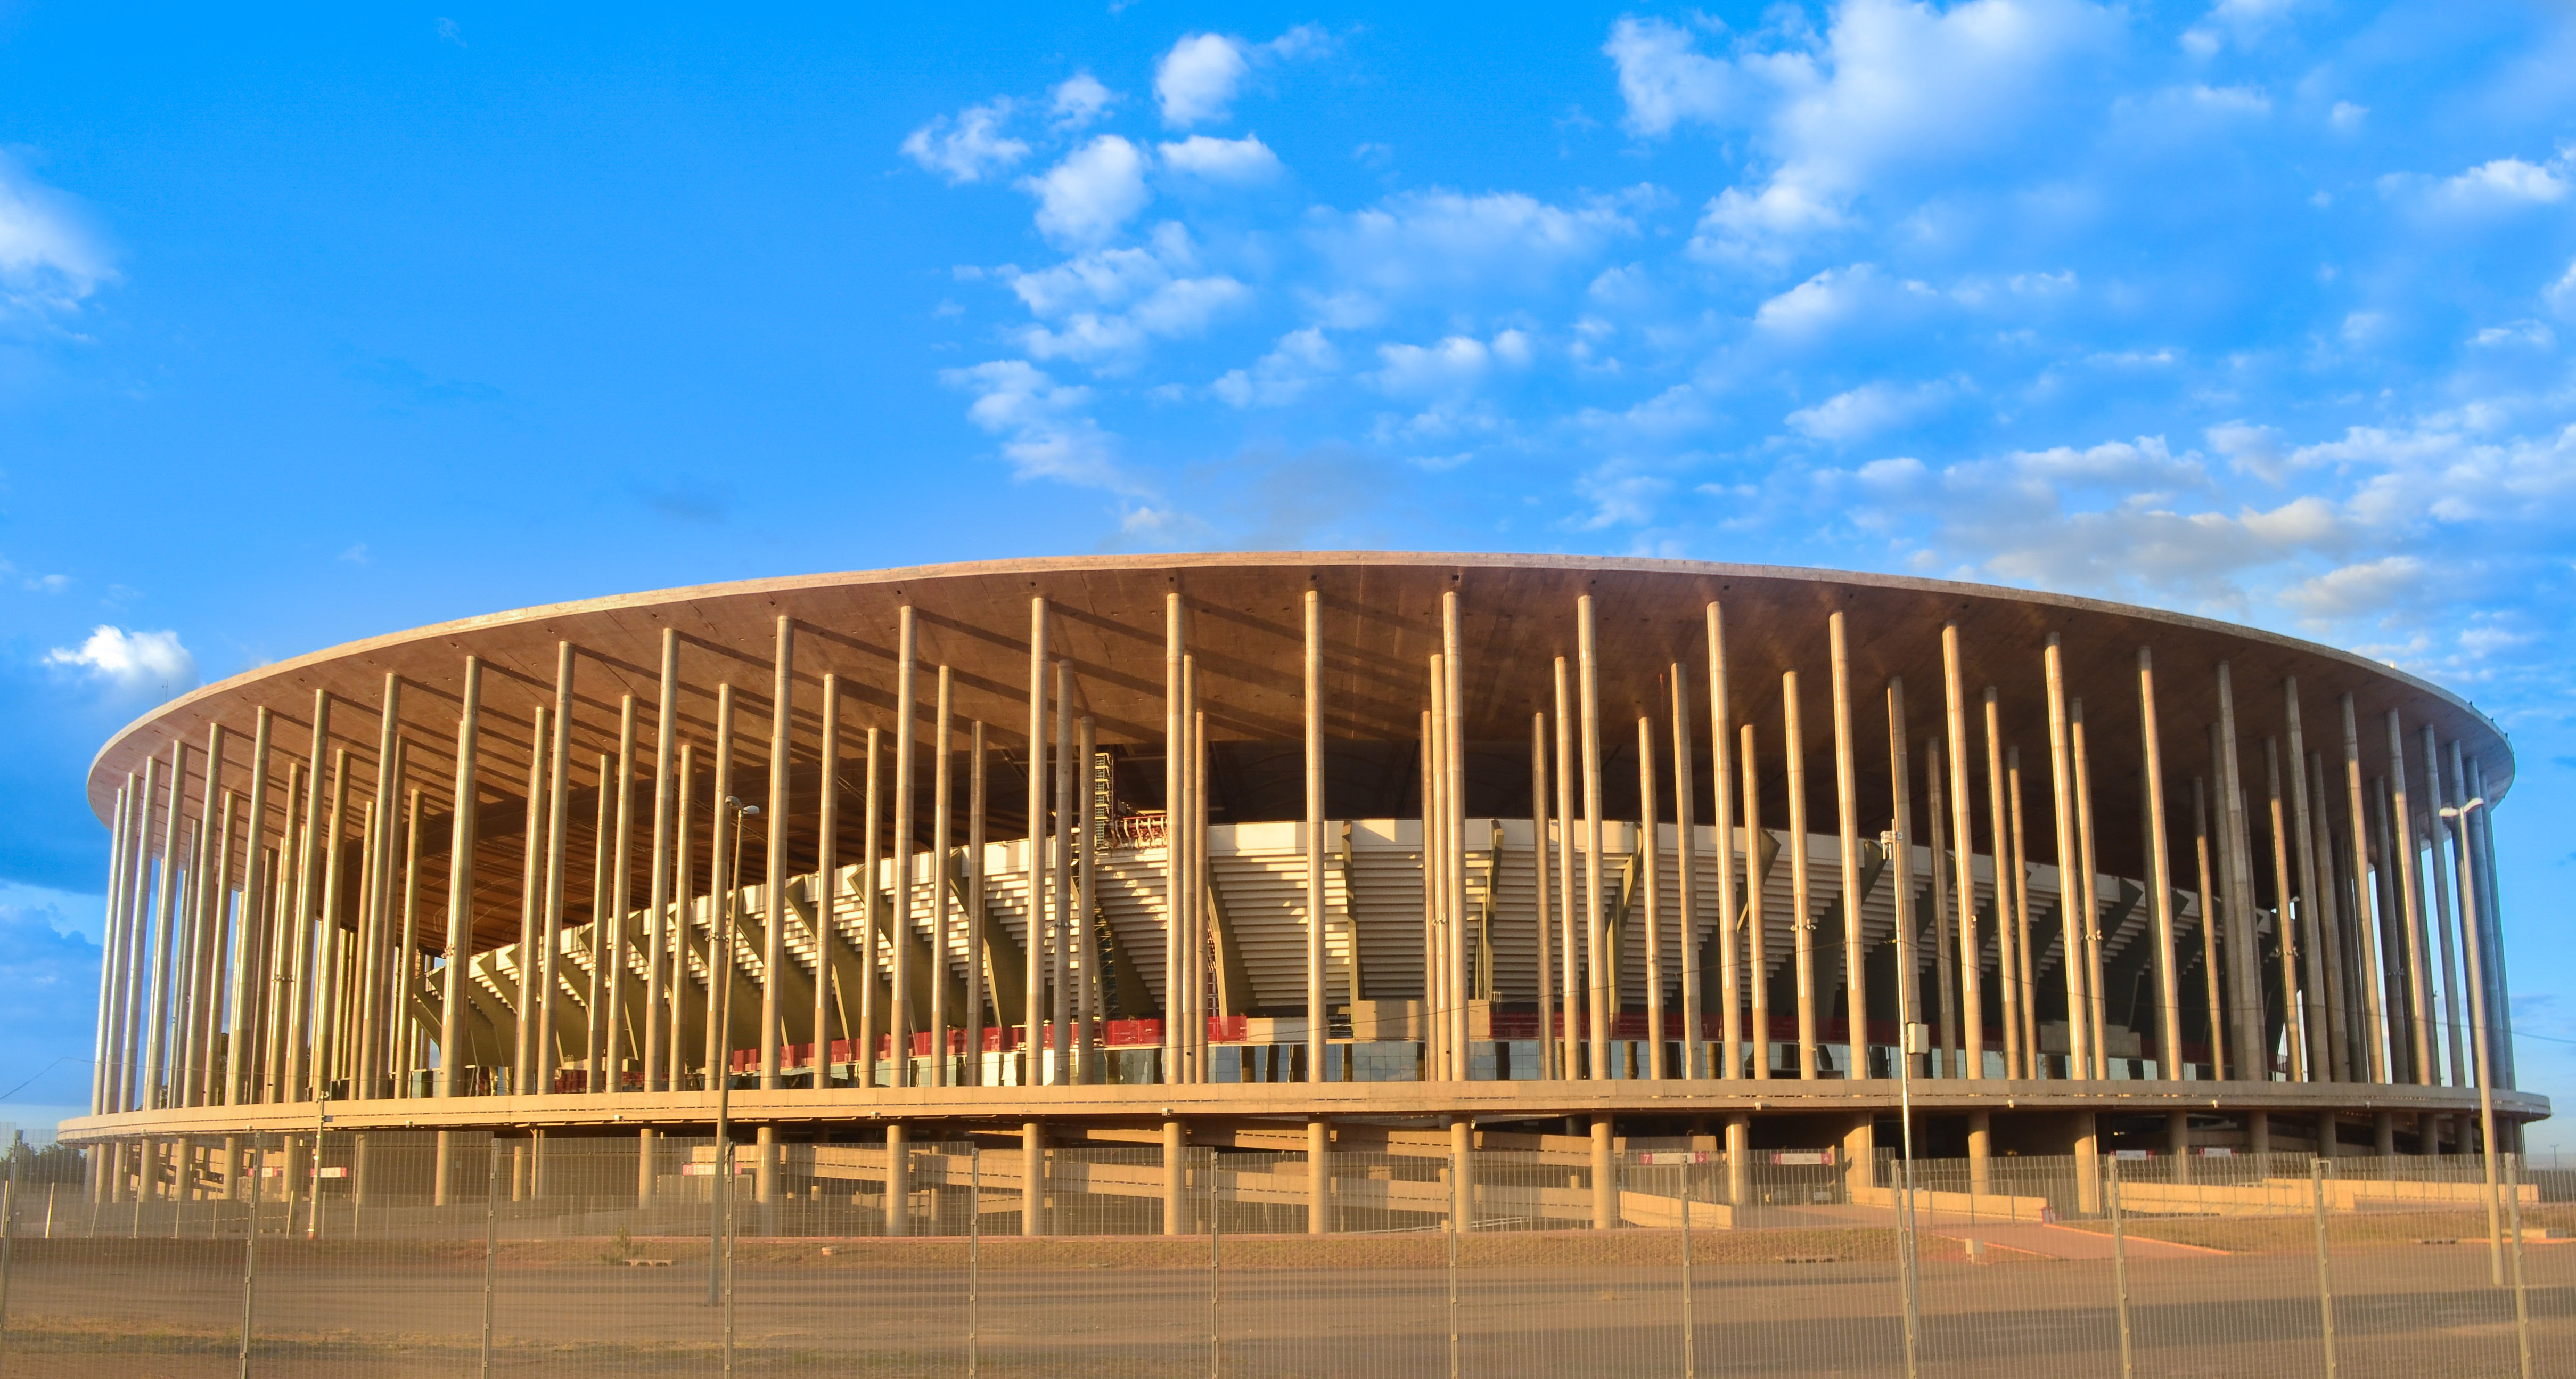 BSB também passou por suas renovações, como a reforma do Estádio Nacional de Brasília Mané Garrincha (Foto: Victor32/Good Free Photos)